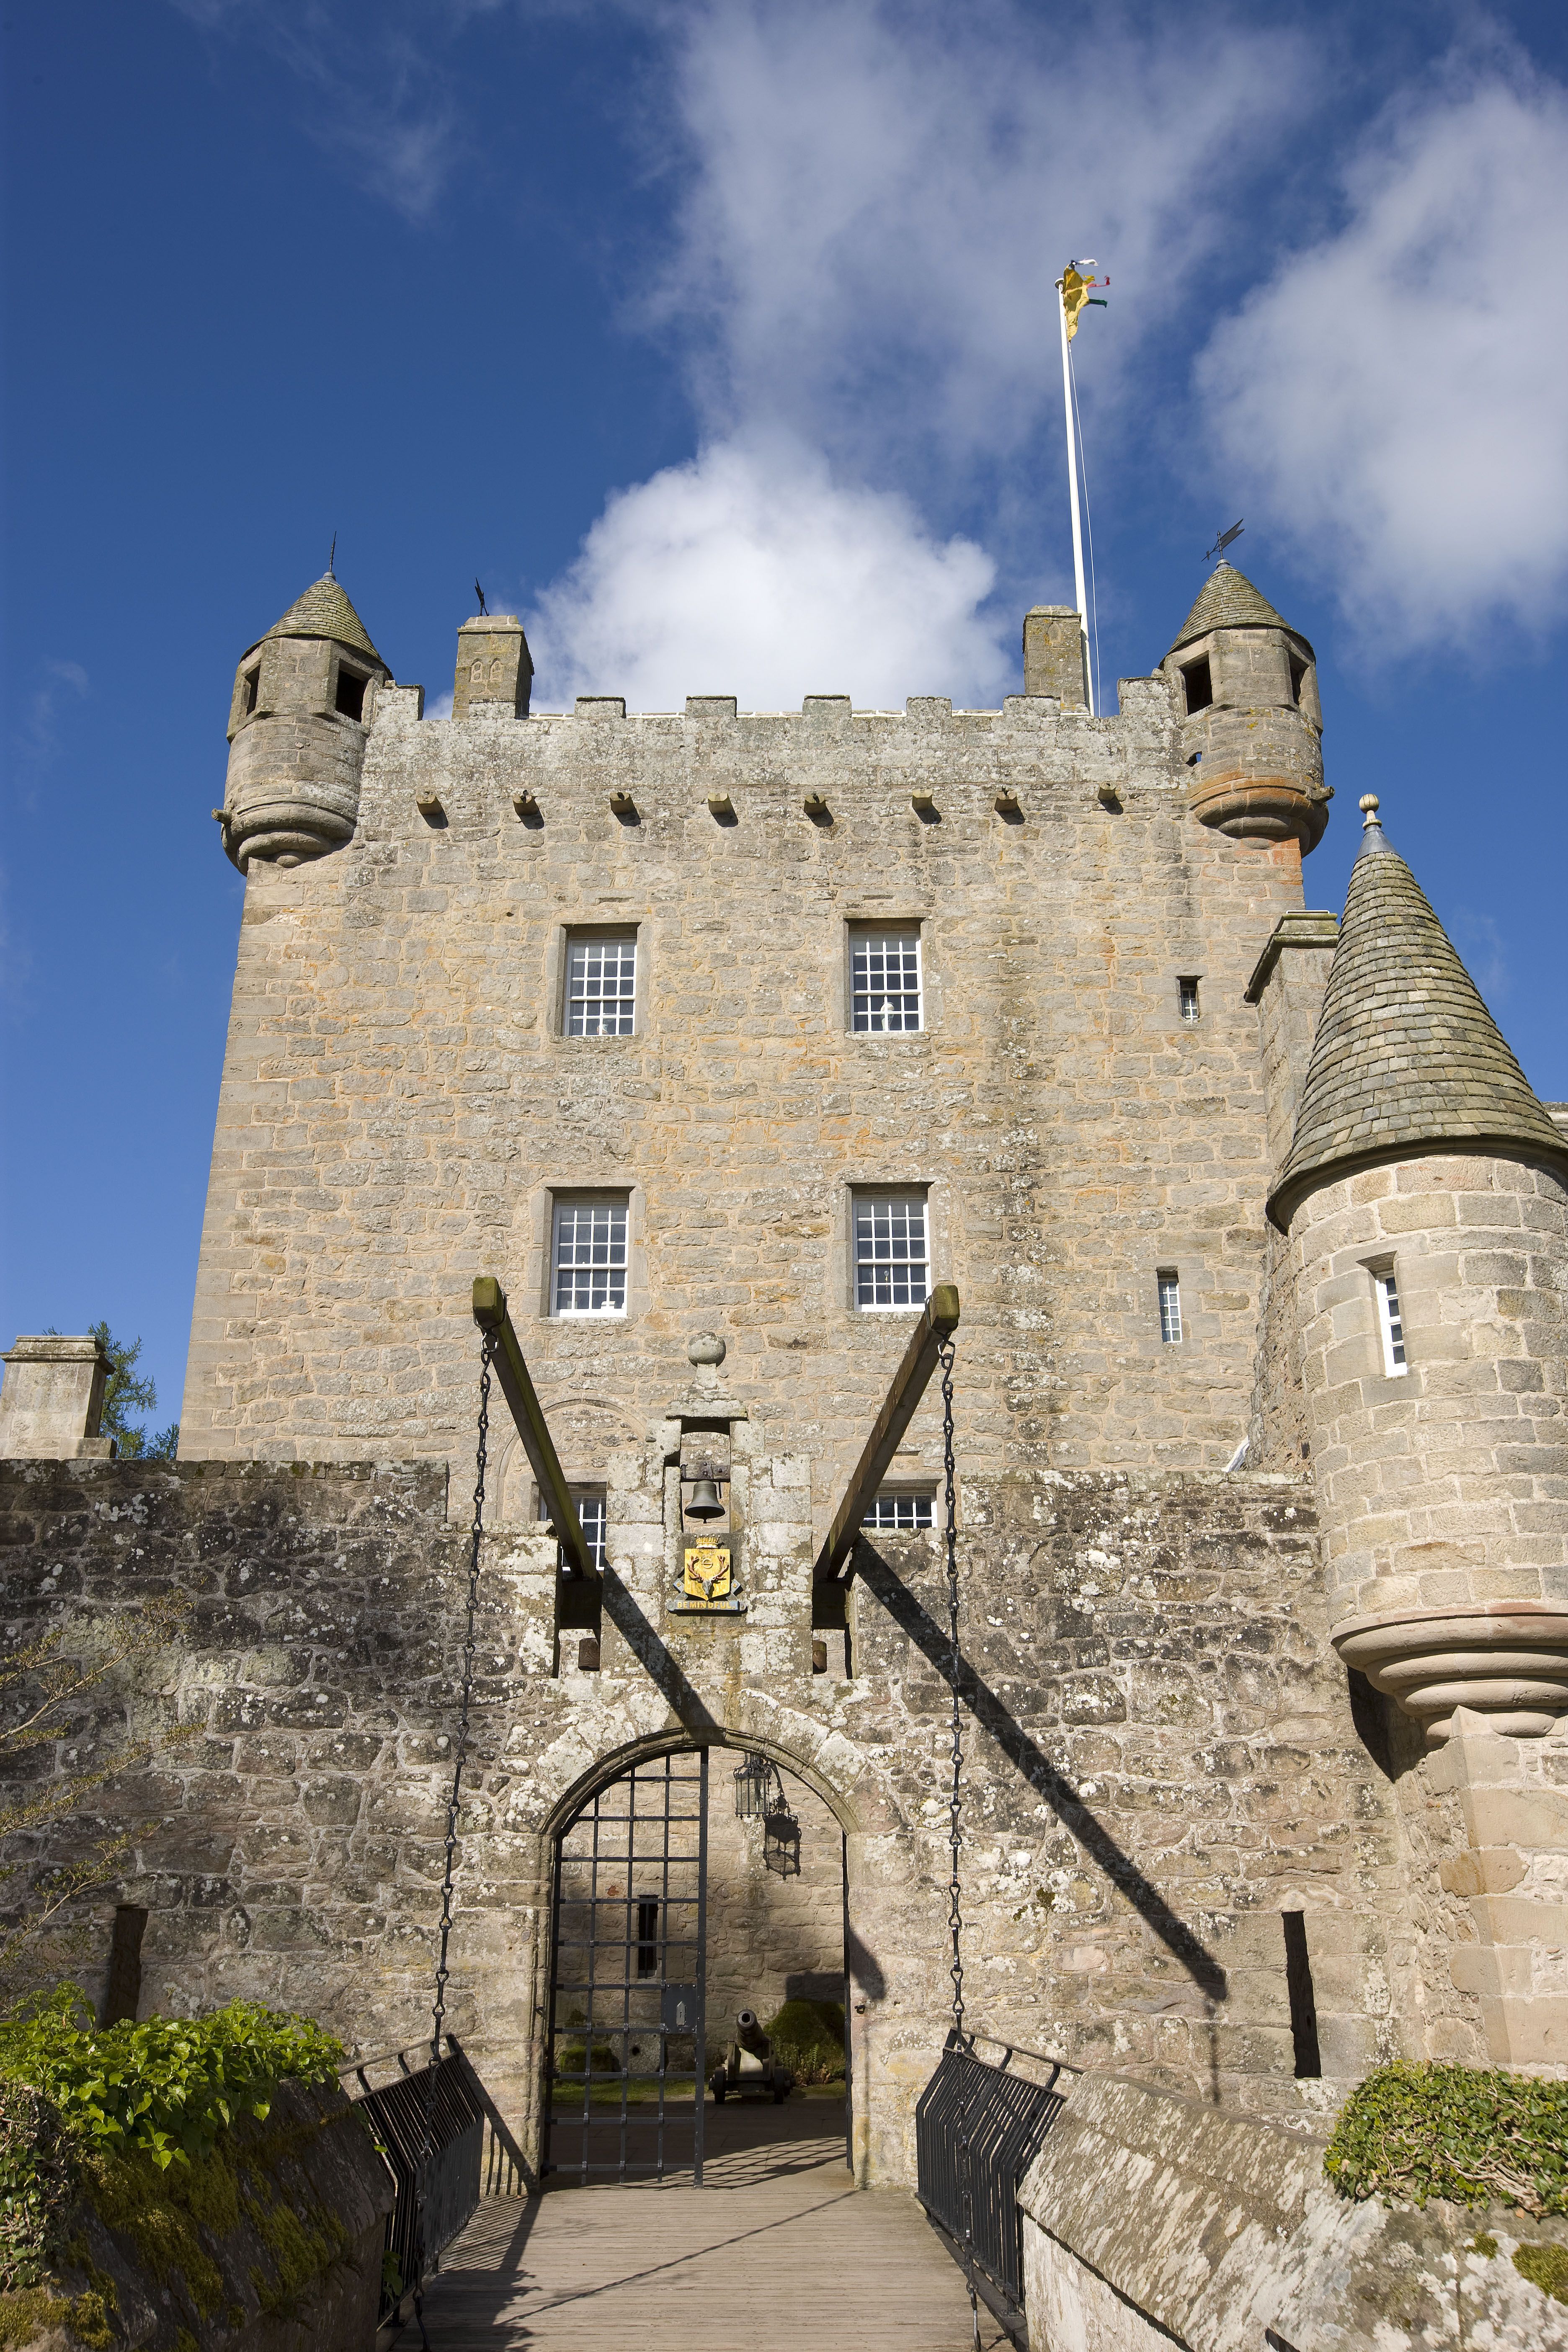 Cawdor Castle, B9090, Cawdor, Nairn, Scotland